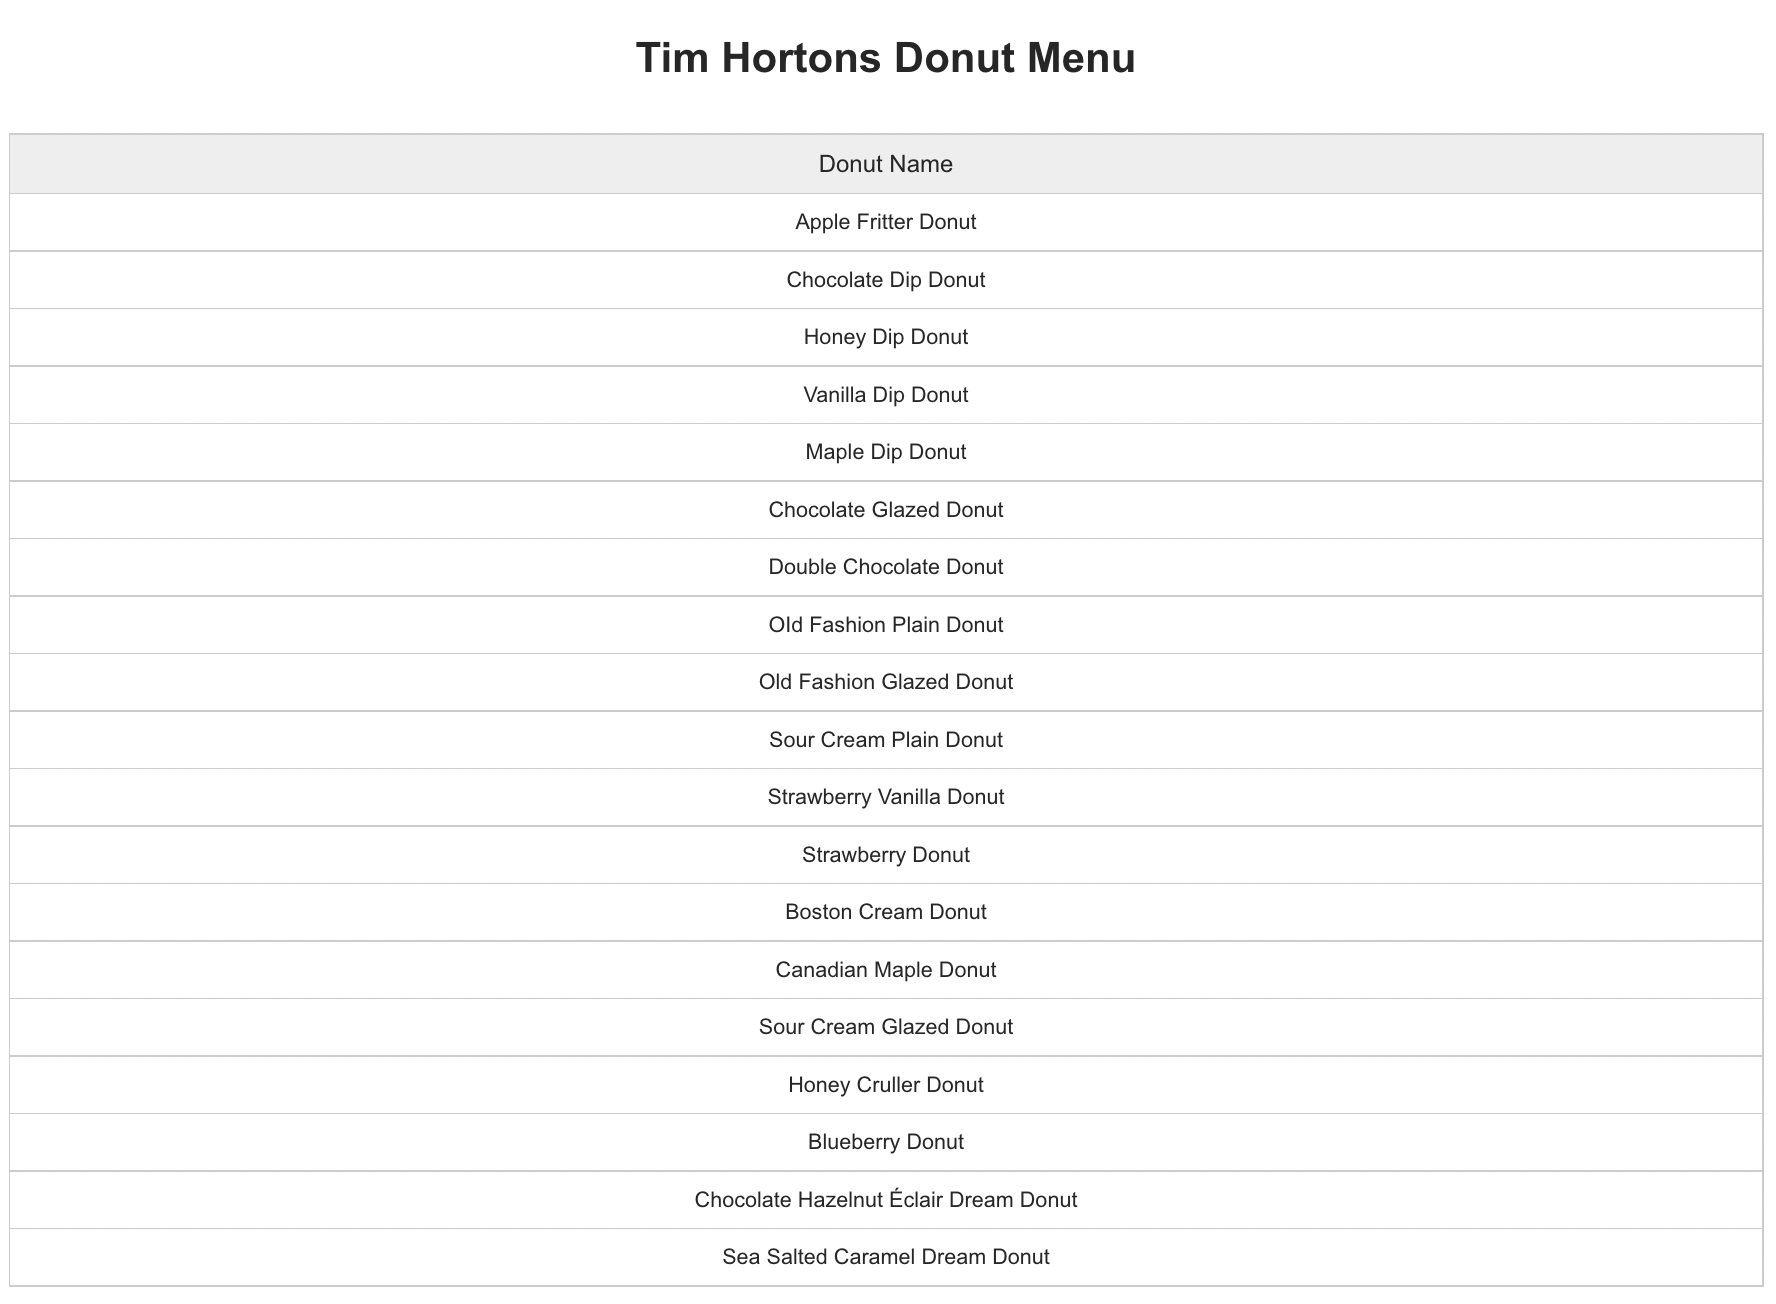 Tim Hortons Donut Menu 